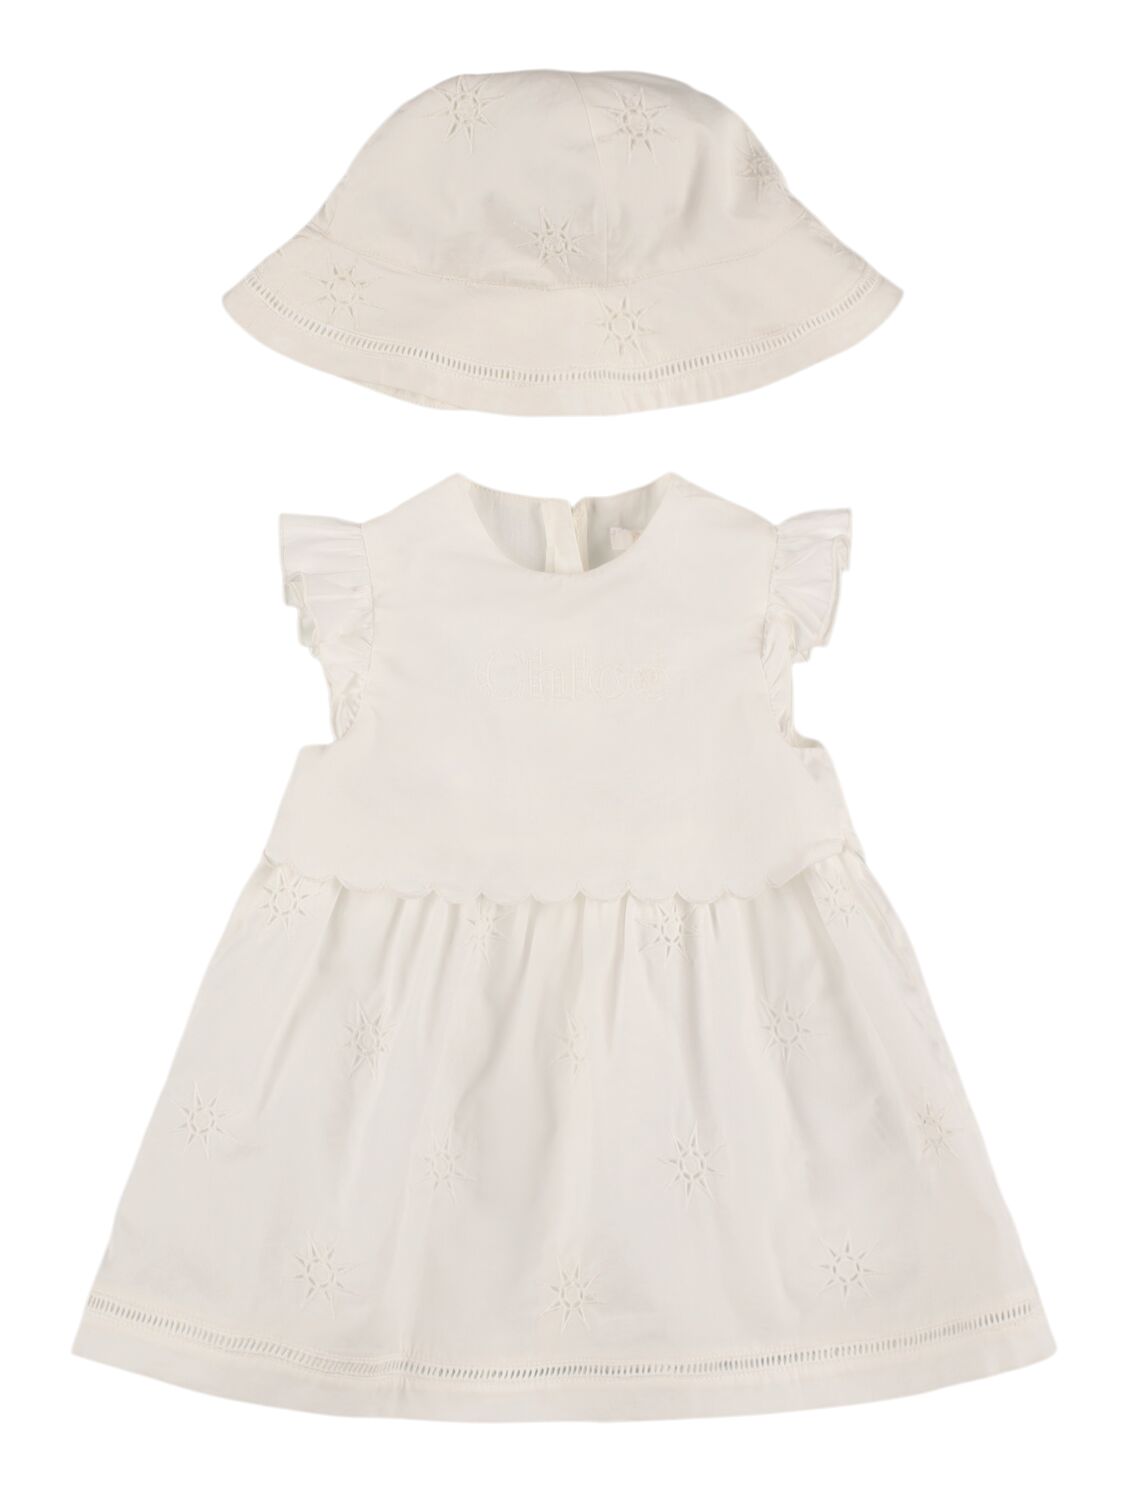 Chloé Babies' Cotton Poplin Dress & Hat In White